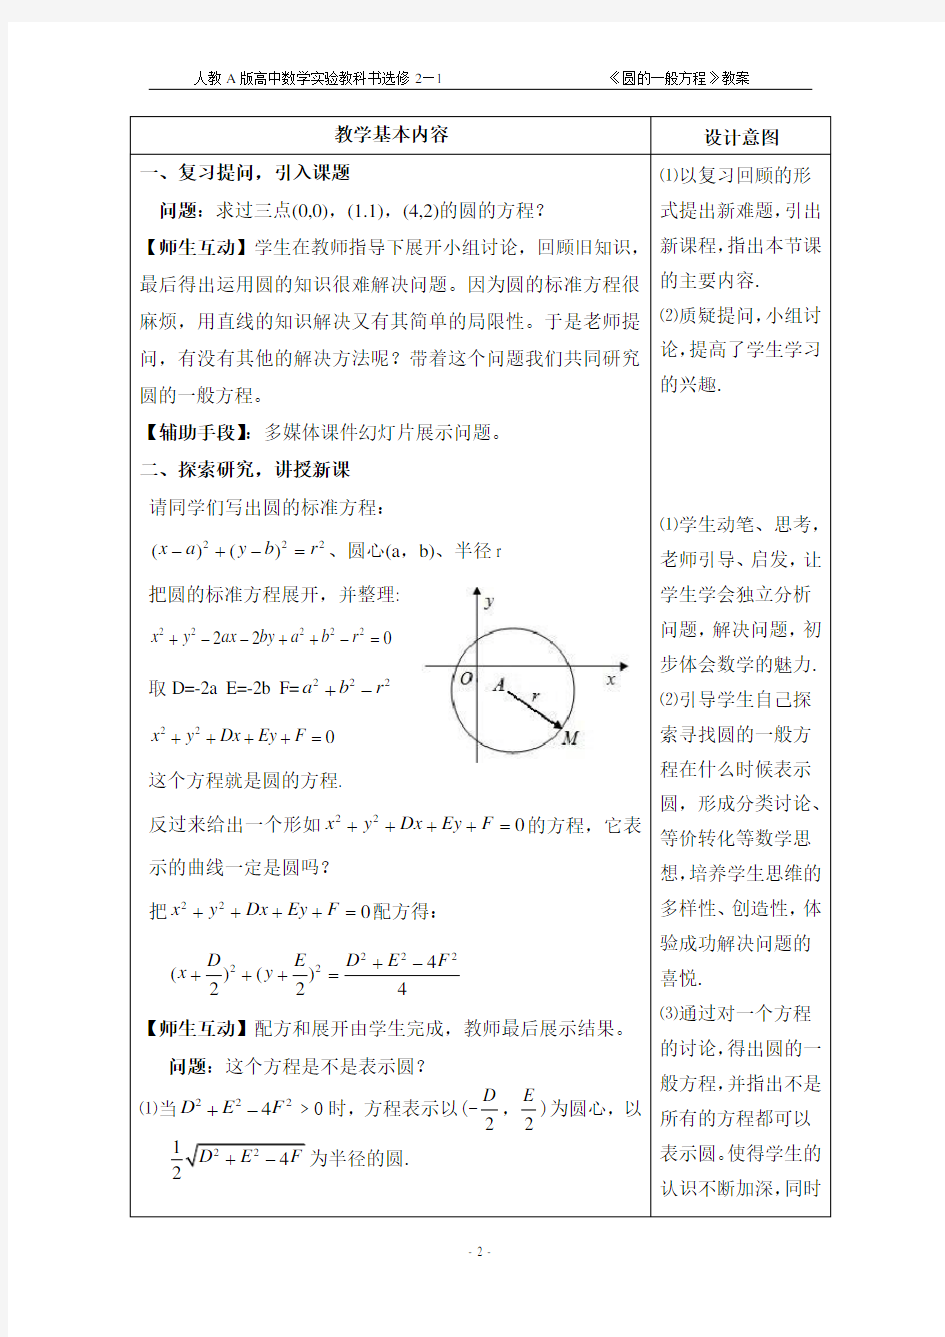 (完整版)圆的一般方程教案(正式)